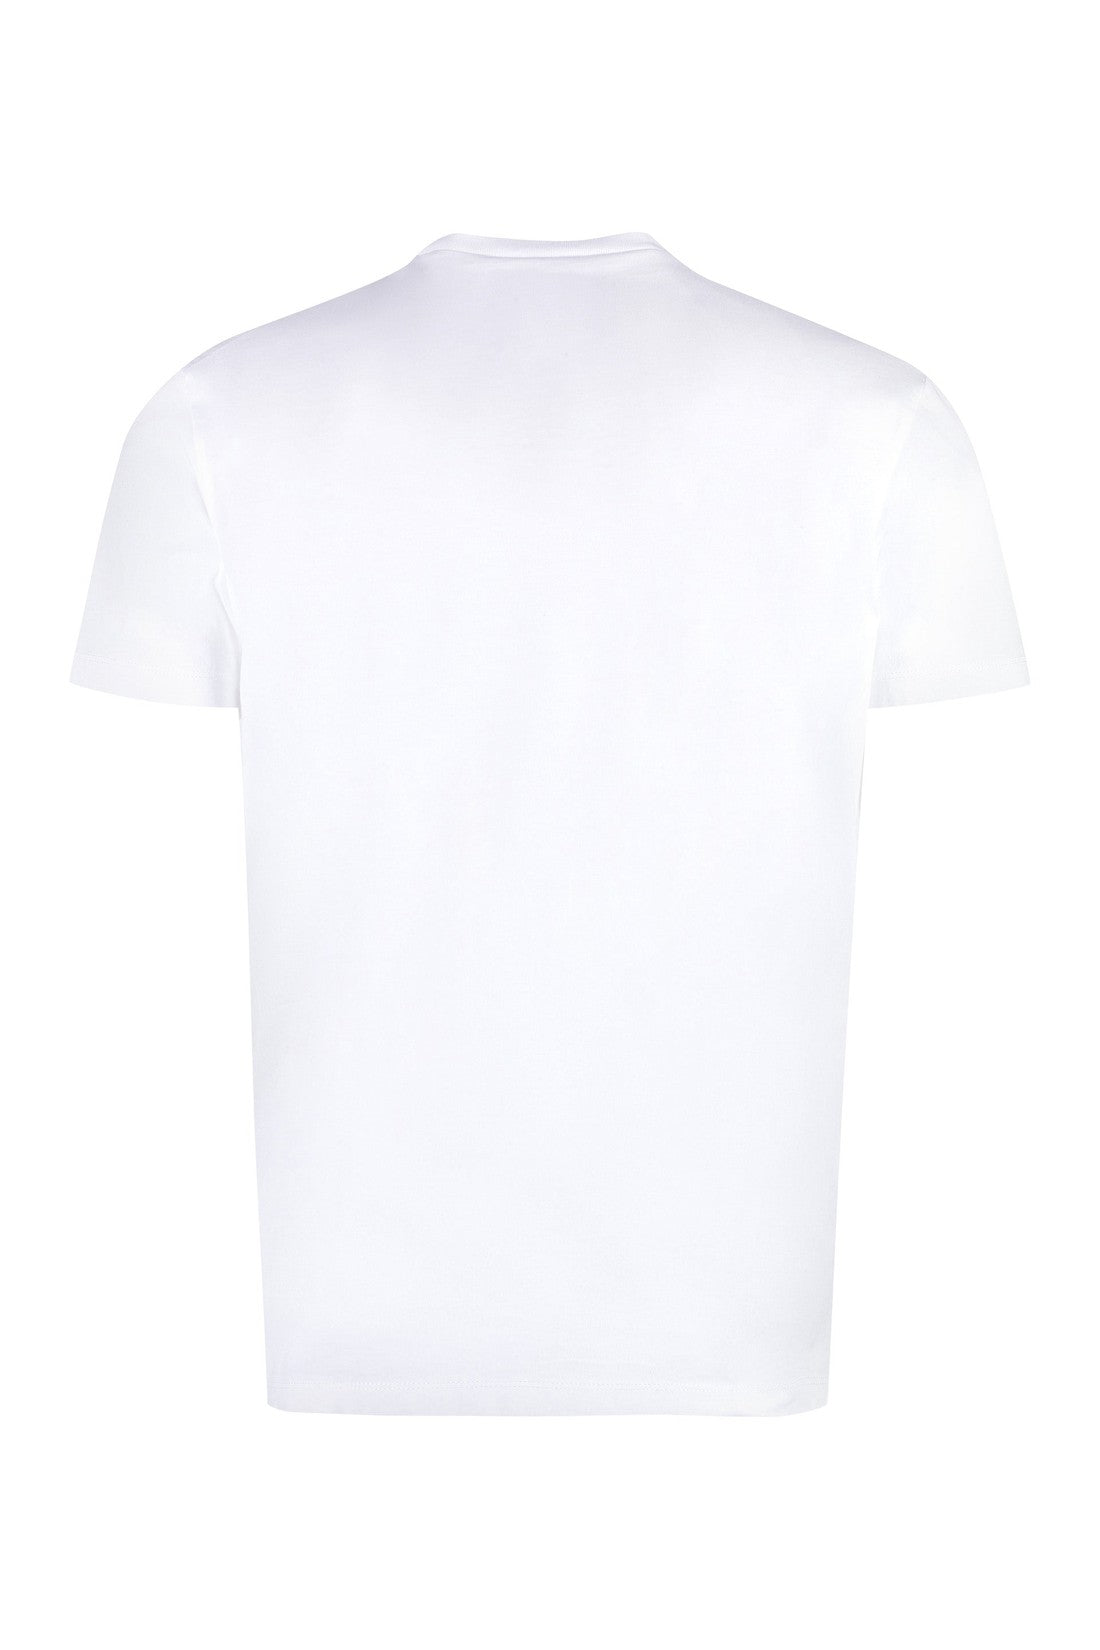 Dsquared2-OUTLET-SALE-Cotton crew-neck T-shirt-ARCHIVIST